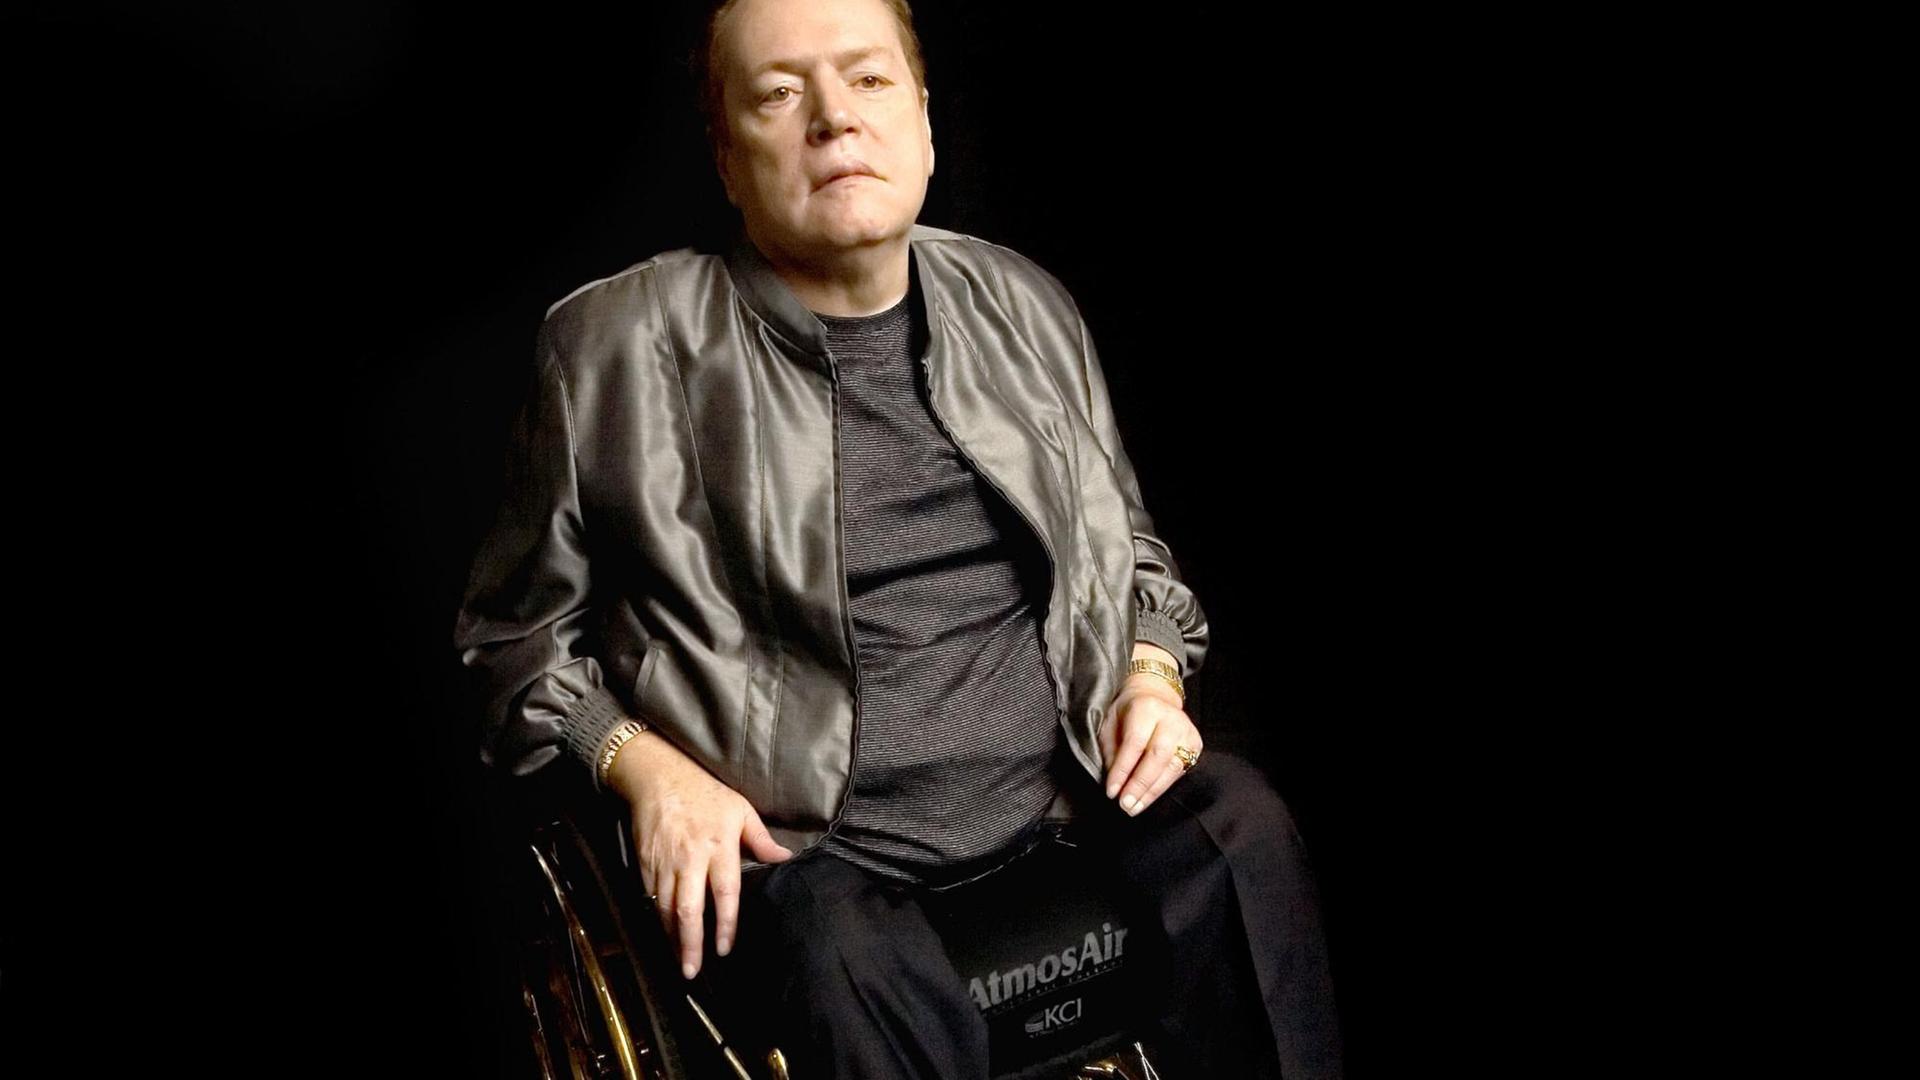 Pornoverleger Larry Flynt in seinem Rollstuhl.